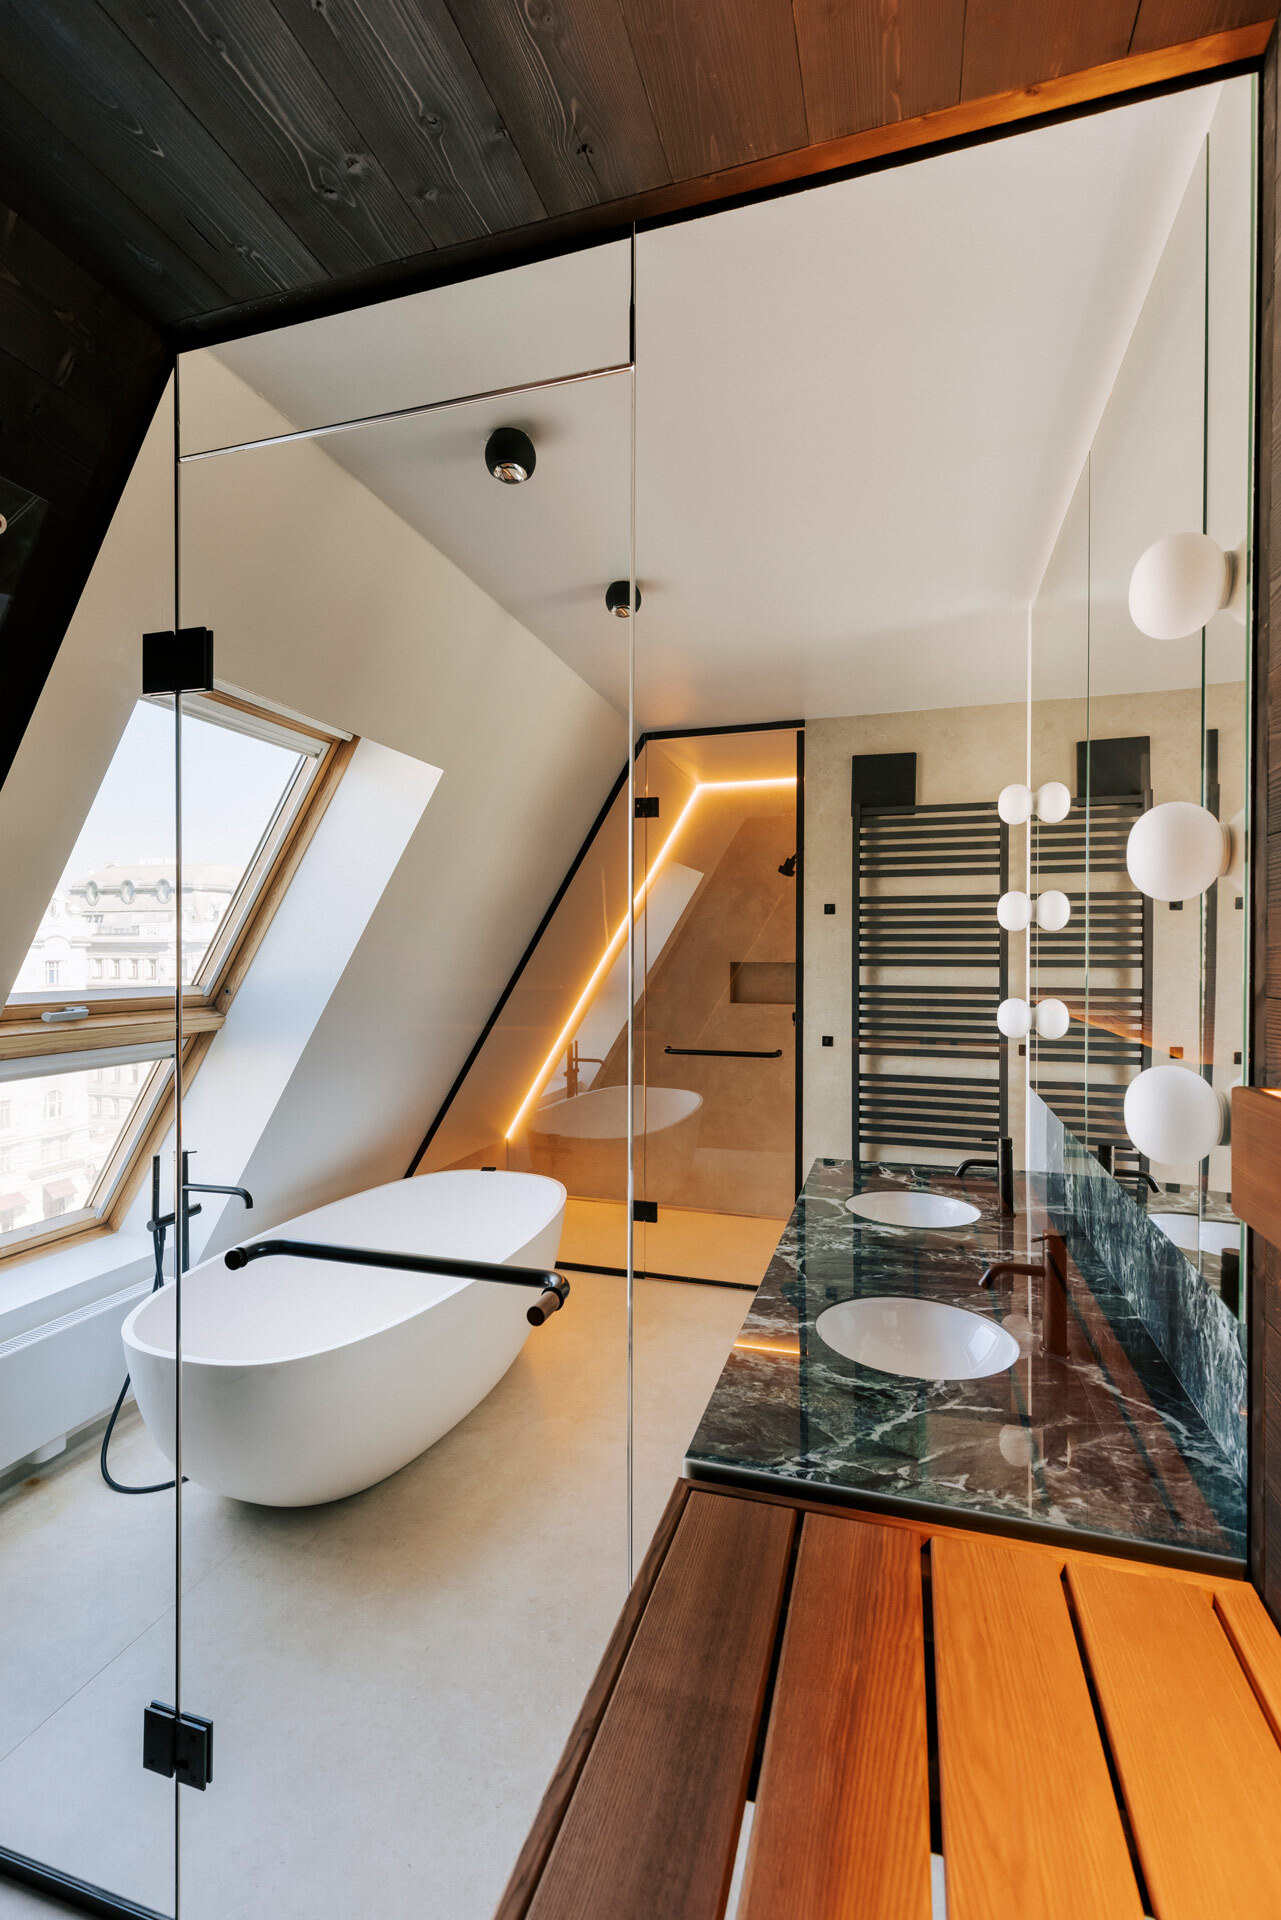 Blick aus einer maßgeschneiderten Sauna in ein luxuriöses Badezimmer einer Dachwohnung mit freistehender Badewanne und dezent beleuchteter Dusche.